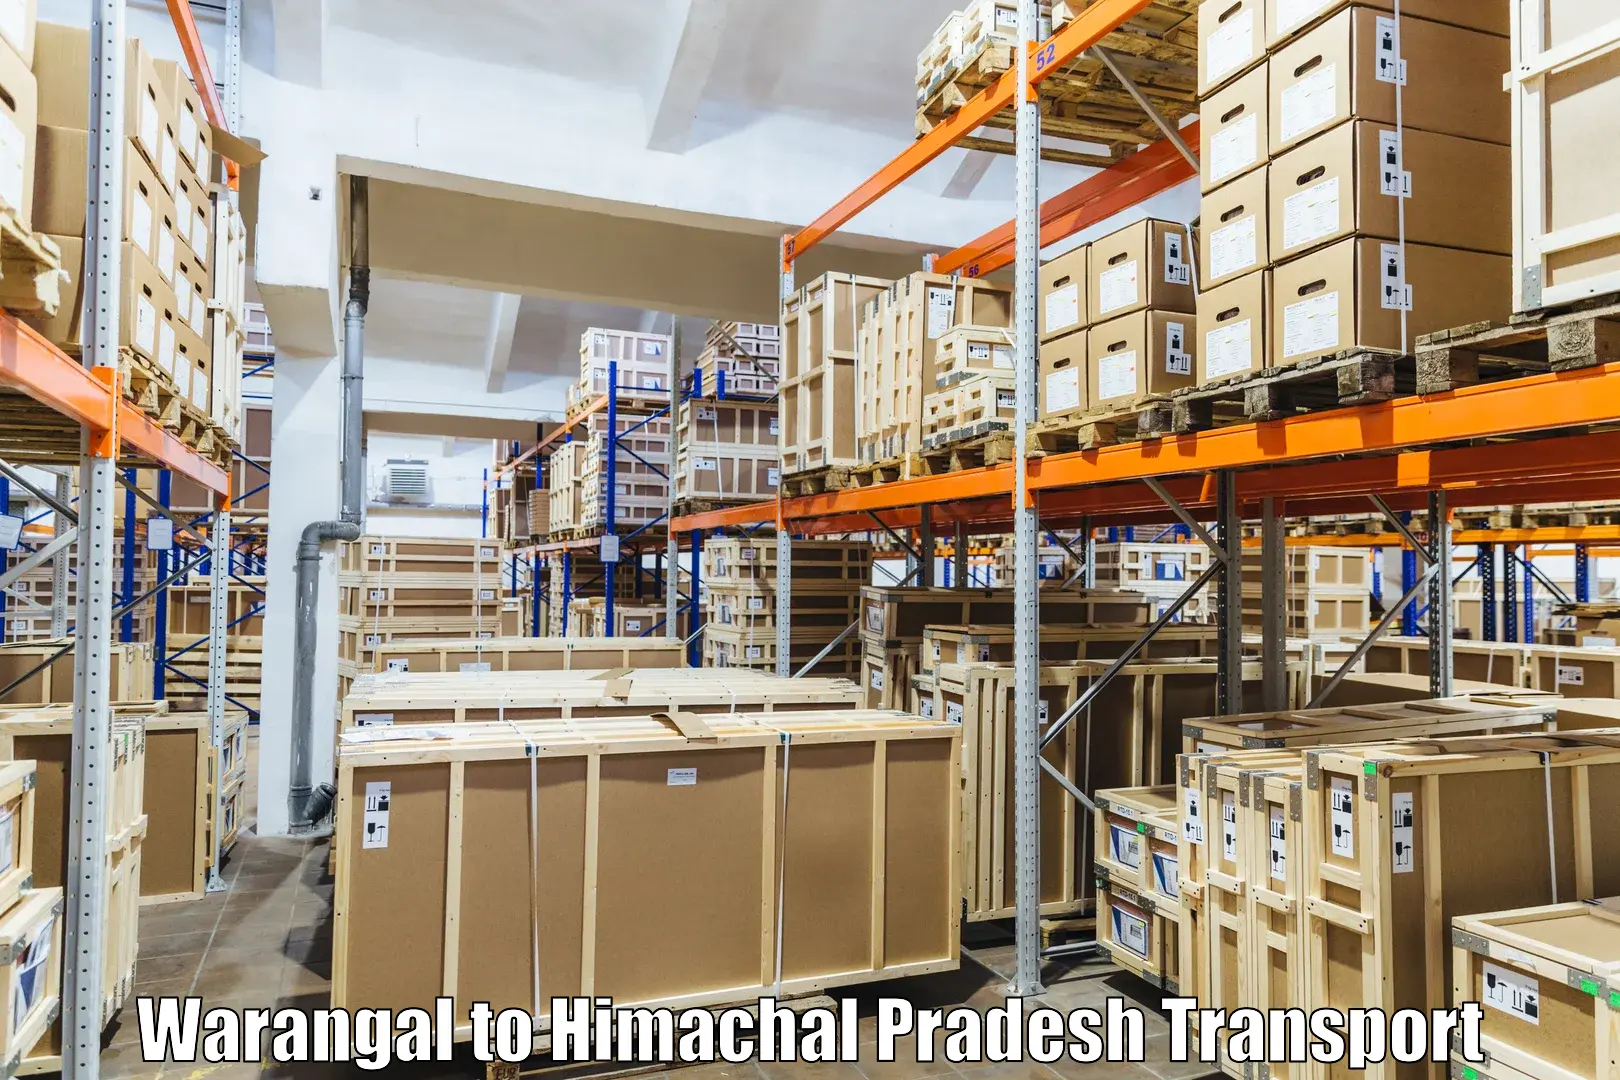 Daily parcel service transport Warangal to Chamba